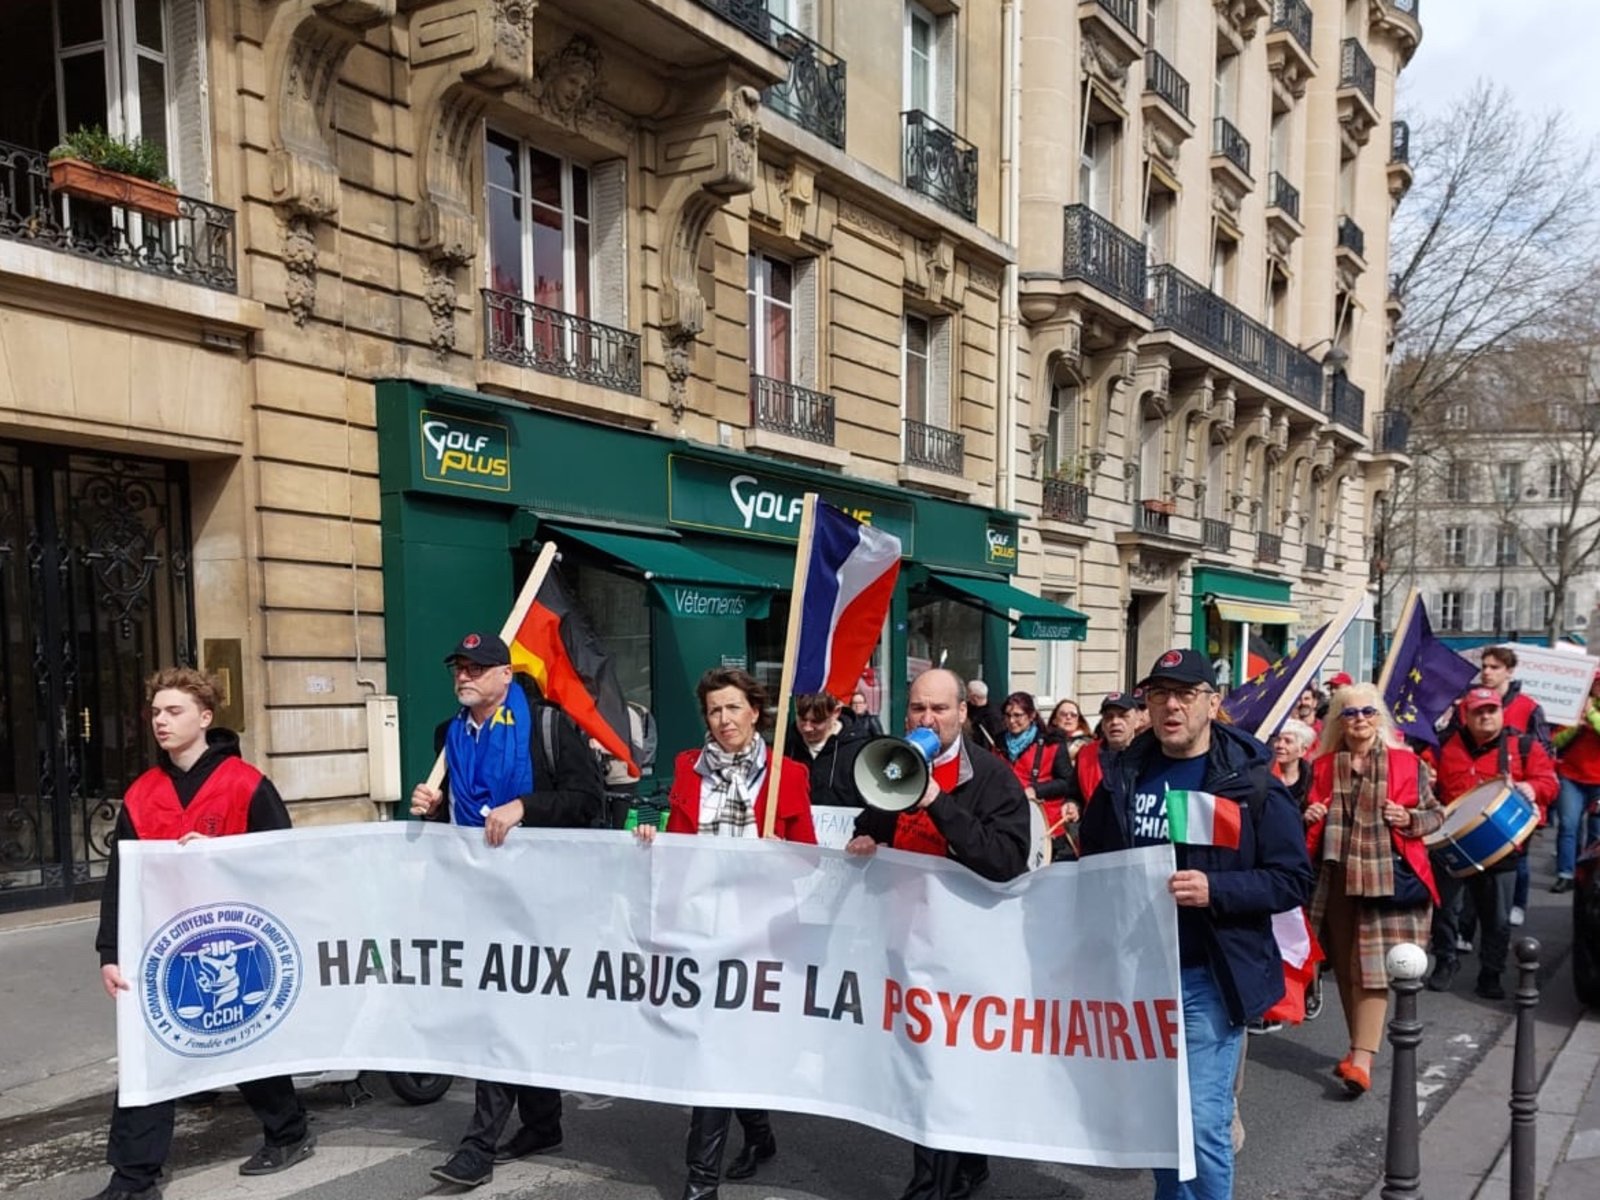 Občanská komise za lidská práva pochodovala z Parc Monceau do Palais des Congrès, aby žádala psychiatry, ukončit nedobrovolné hospitalizace, drogování dětí a další nátlakové praktiky.